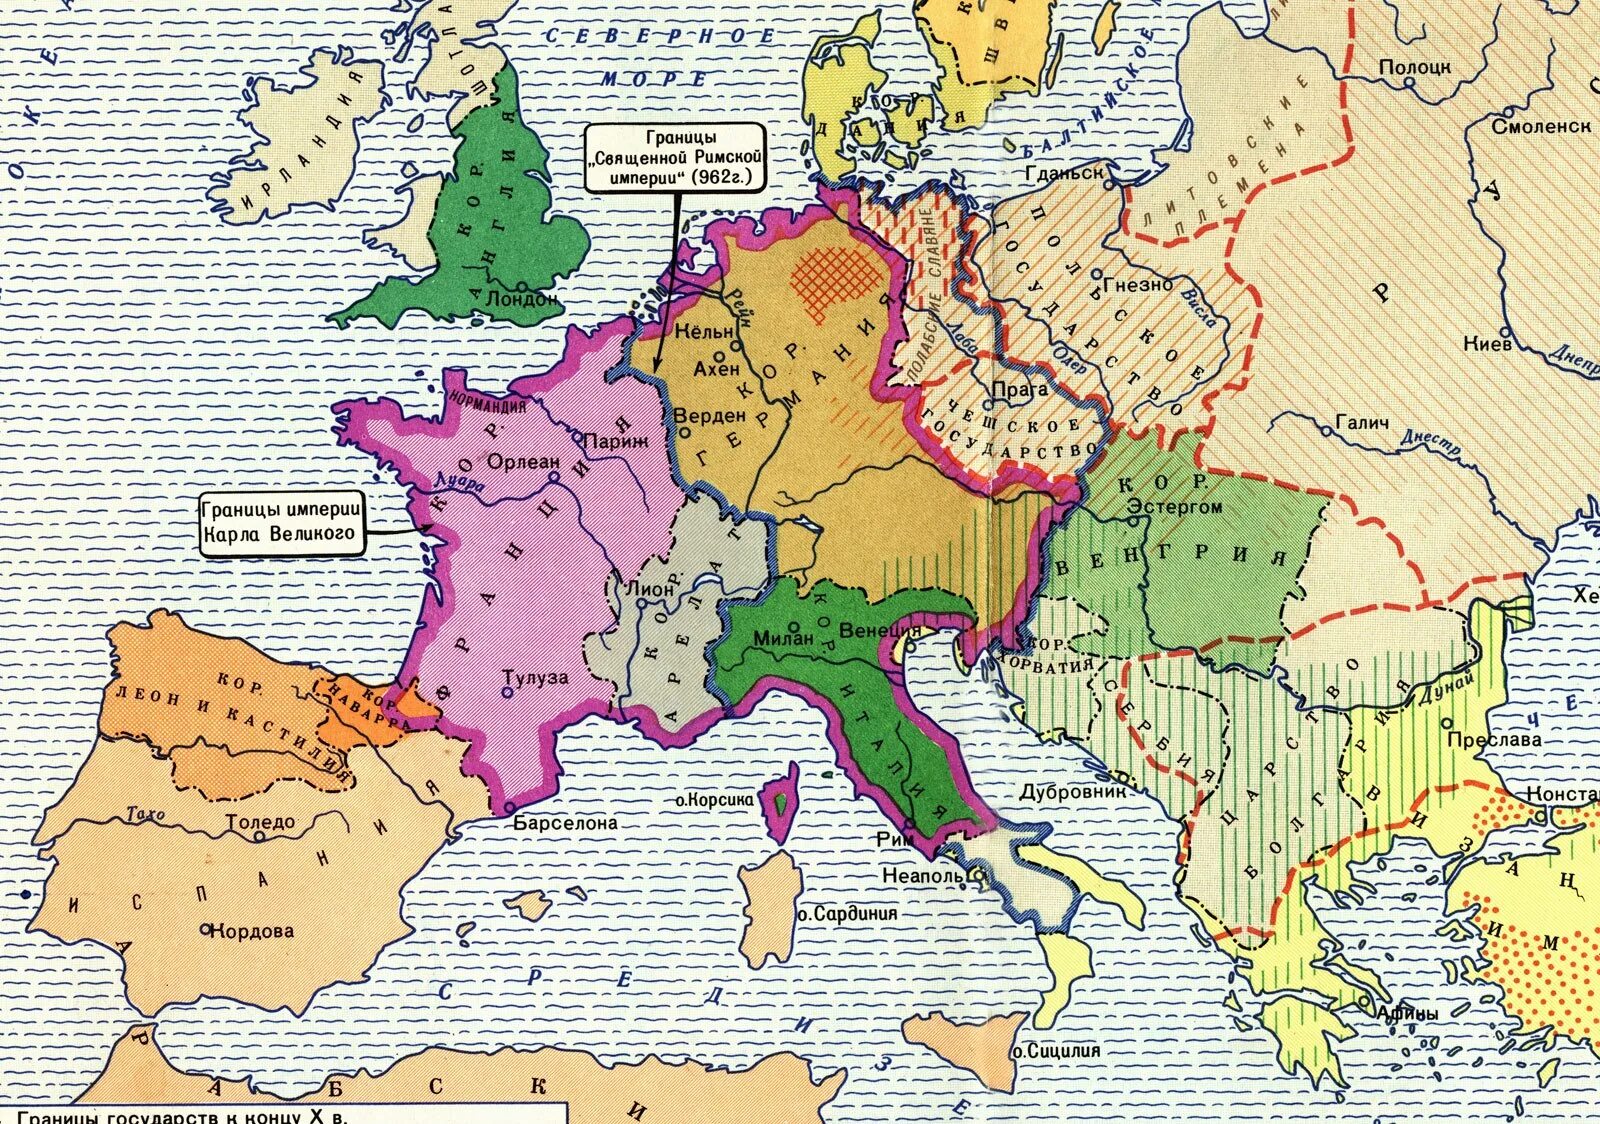 Карта Европы в средние века 10 век. Западная Европа 10 век карта. Карта средневековой Европы 9-11 веков. Карта Европы средневековья 10 век. Карта европы 15 век